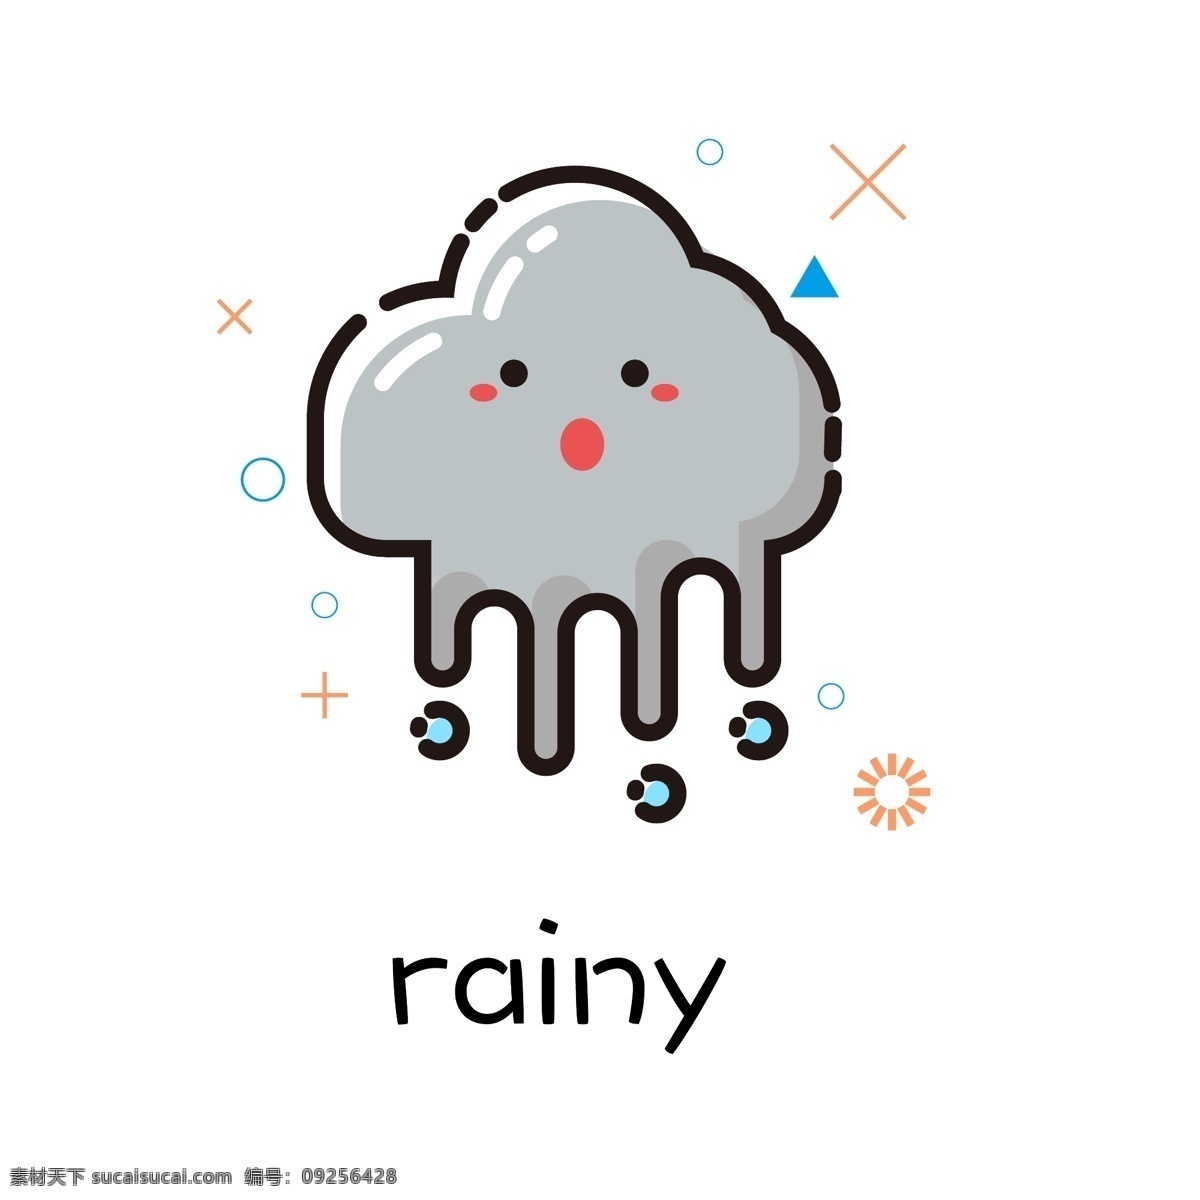 天气 雨 mbe 风格 手绘 插画 手 账 商用 元素 图标 小清新 表情 可爱 下雨 手账 商用元素 矢量 可编辑